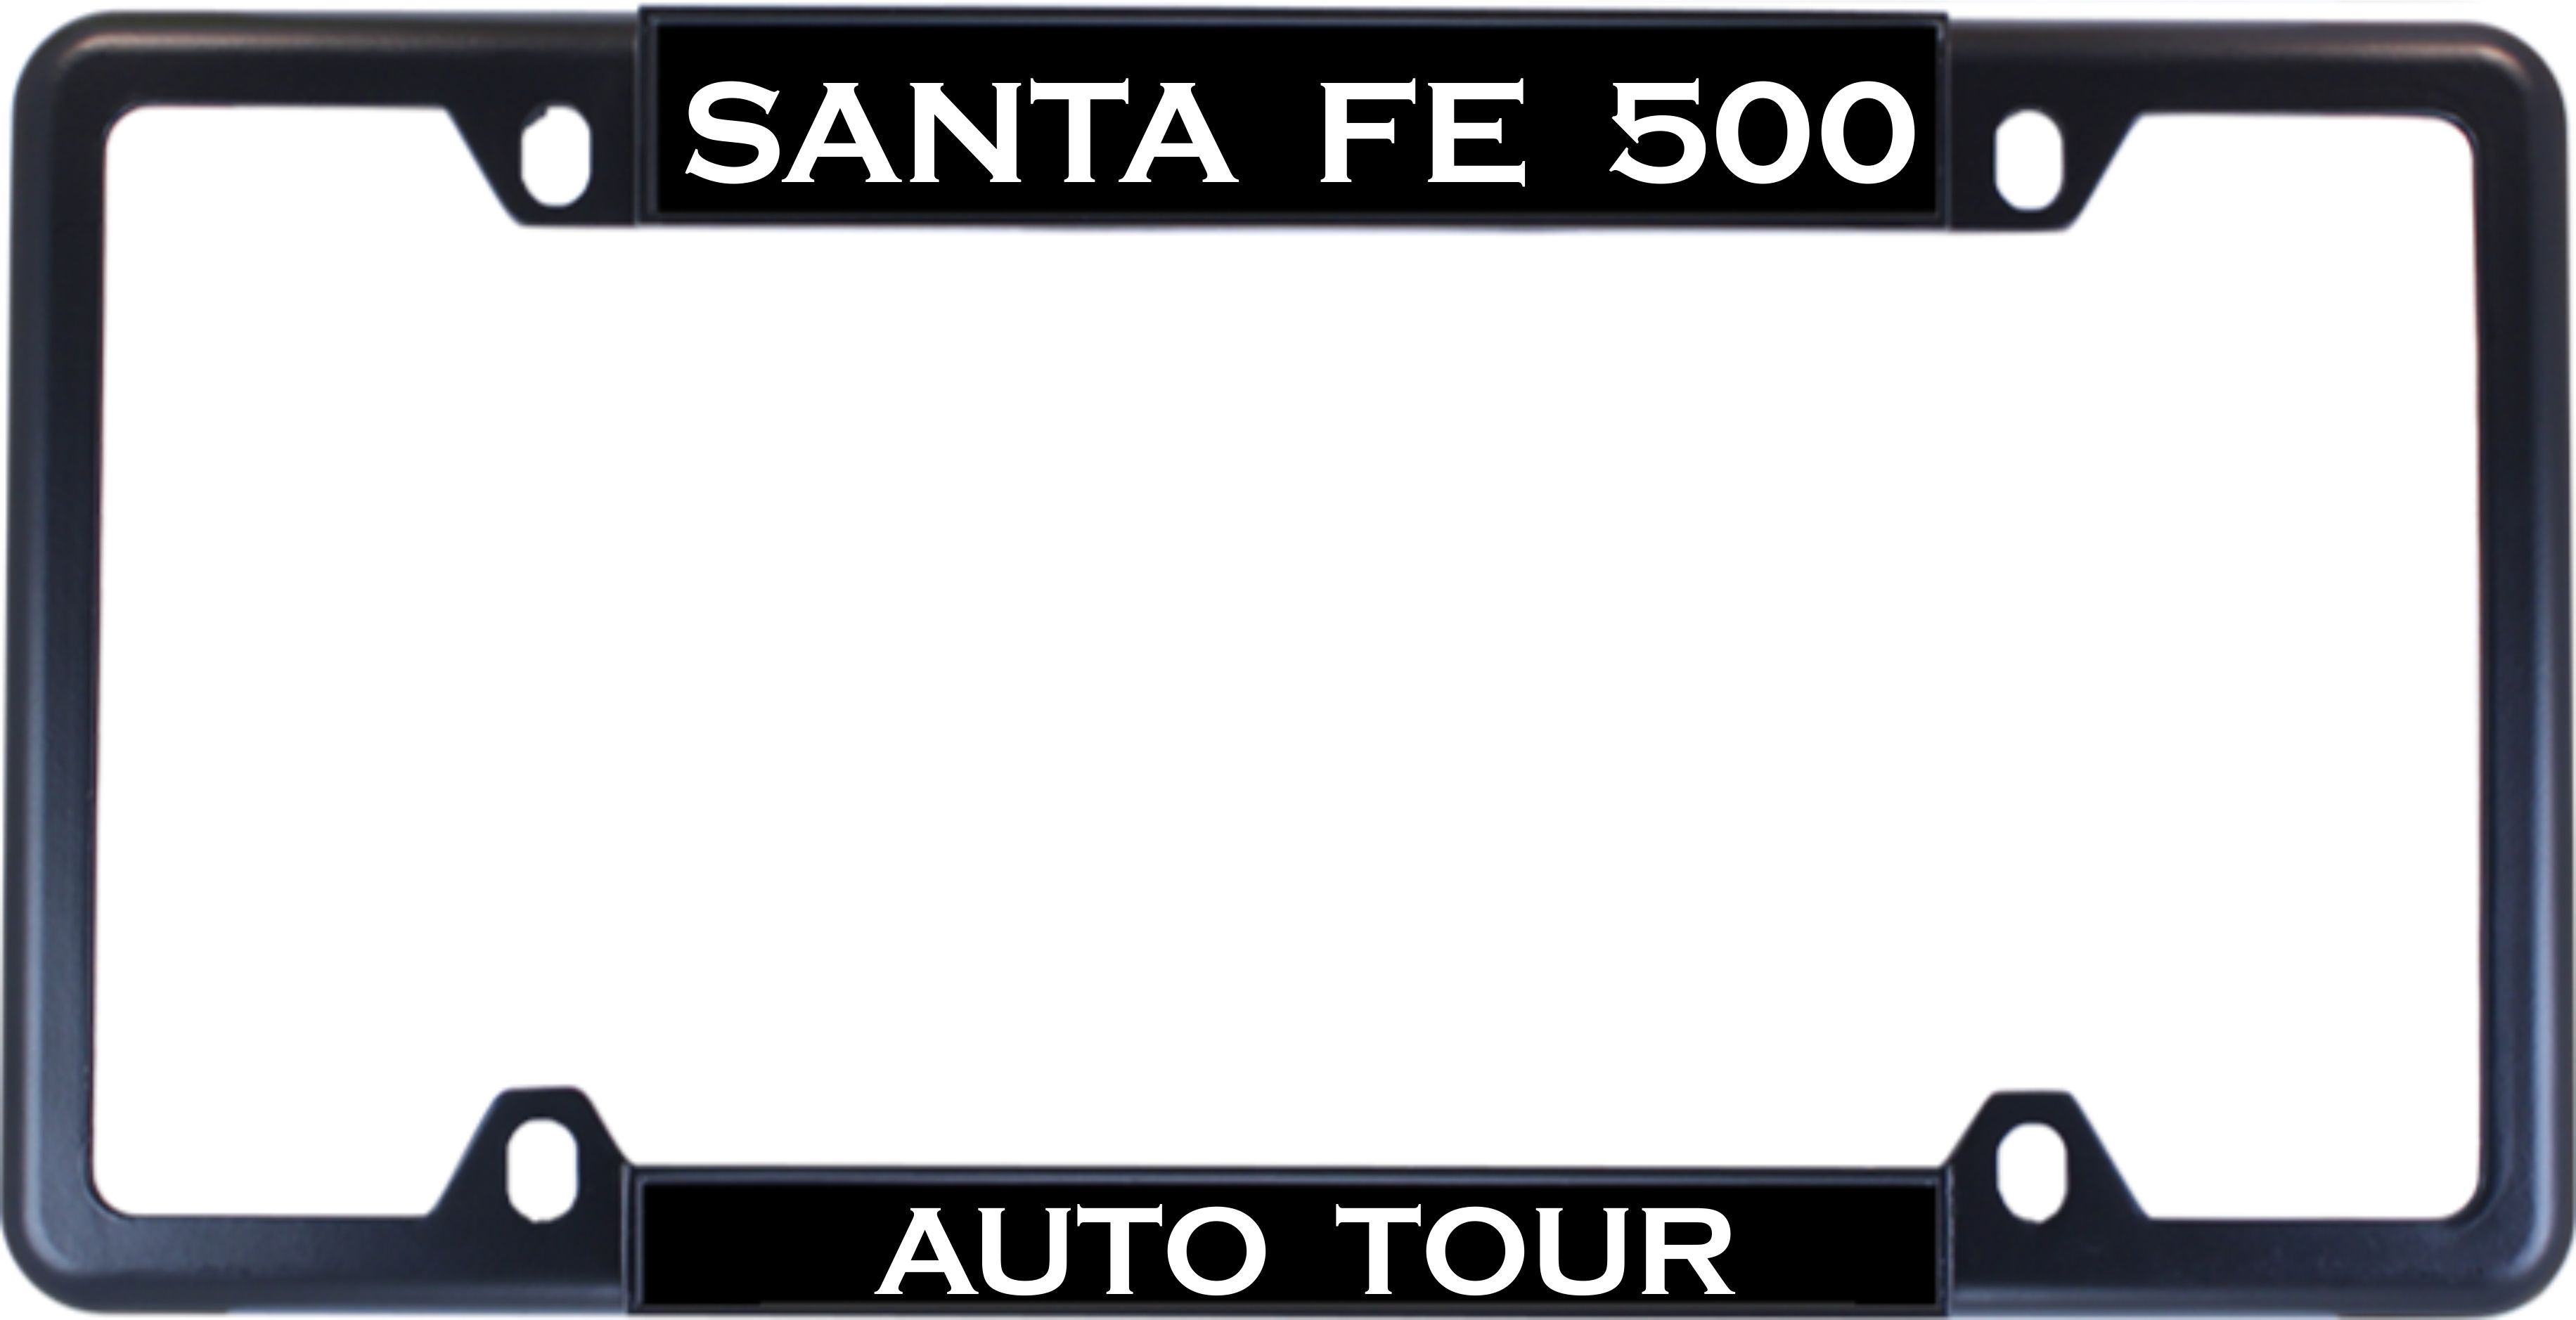 Santa Fe 500 - Custom License plate frame